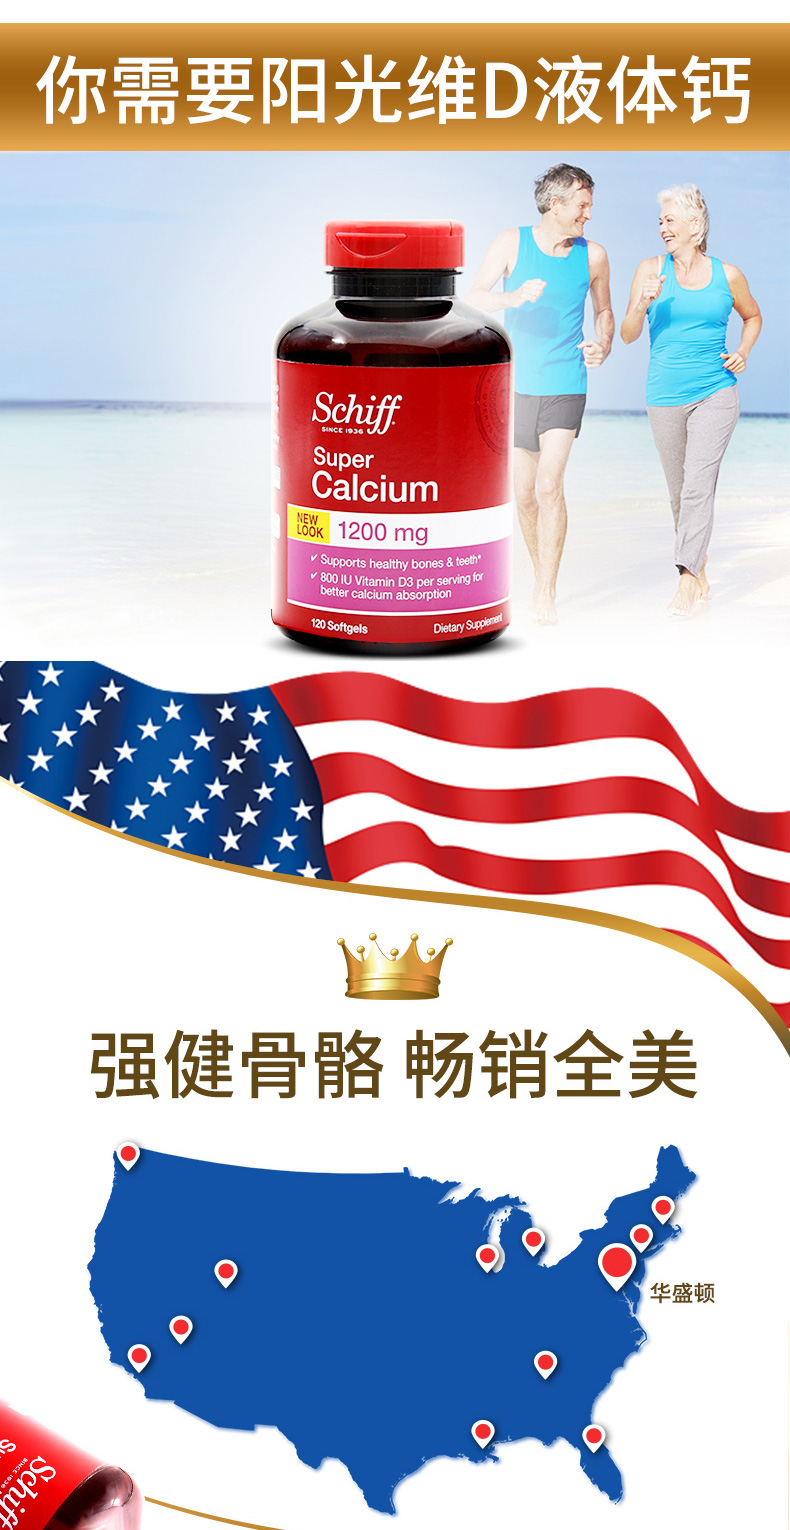 美国进口 Schiff舒钙软胶囊1200mg 成人维生素D3 钙片 120粒 ¥99.00 产品信息 第7张